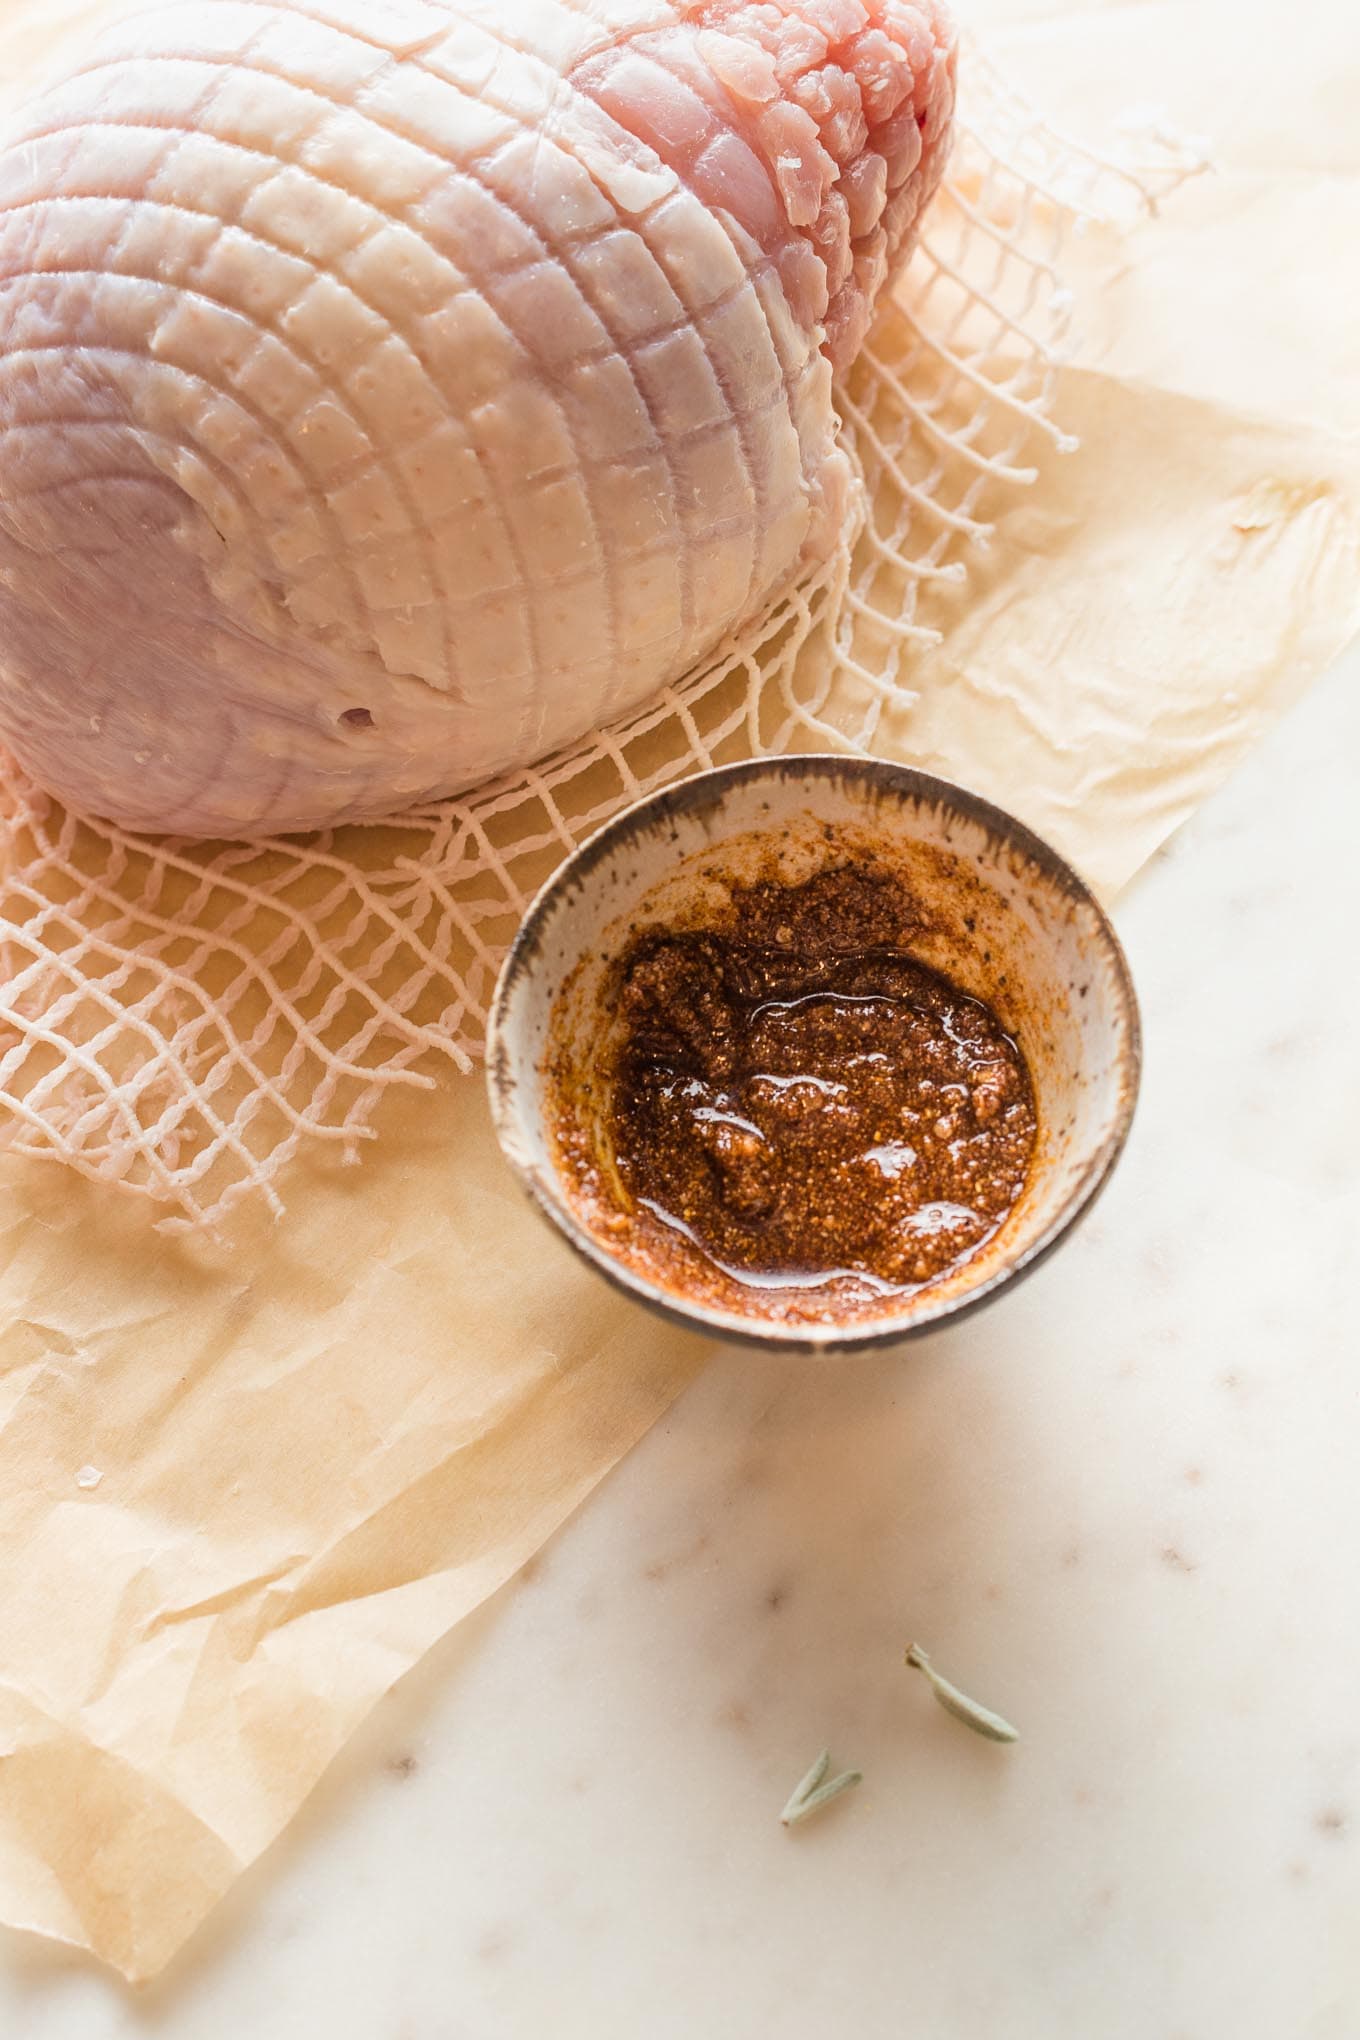 Spice rub for turkey breast.